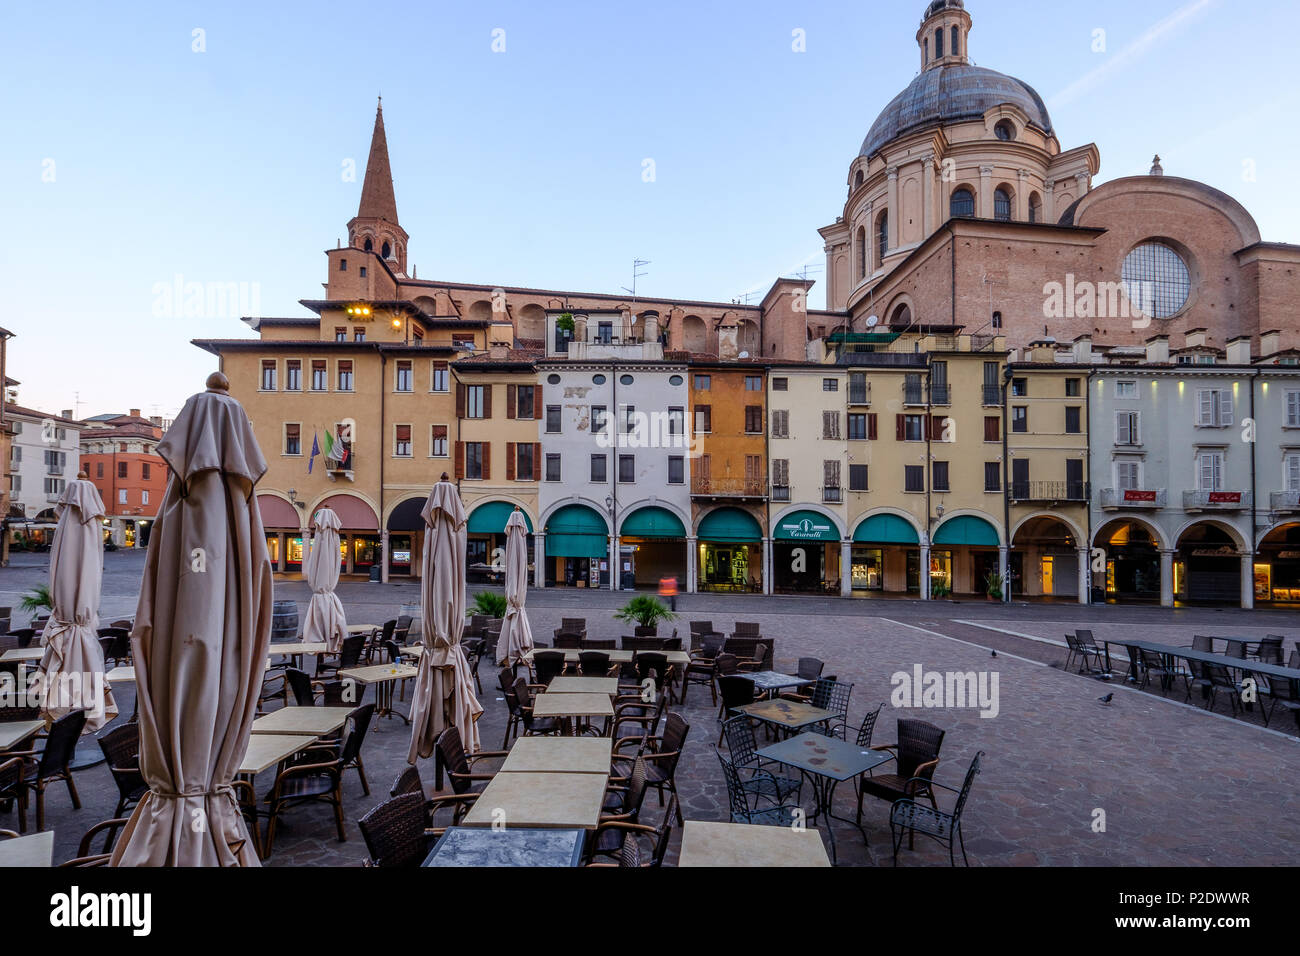 Coffee shop Outdoor leere Tabellen in Italienisch Altstadt. Piazza Erbe, Mantua, Italien. Juni 10, 2018. Stockfoto